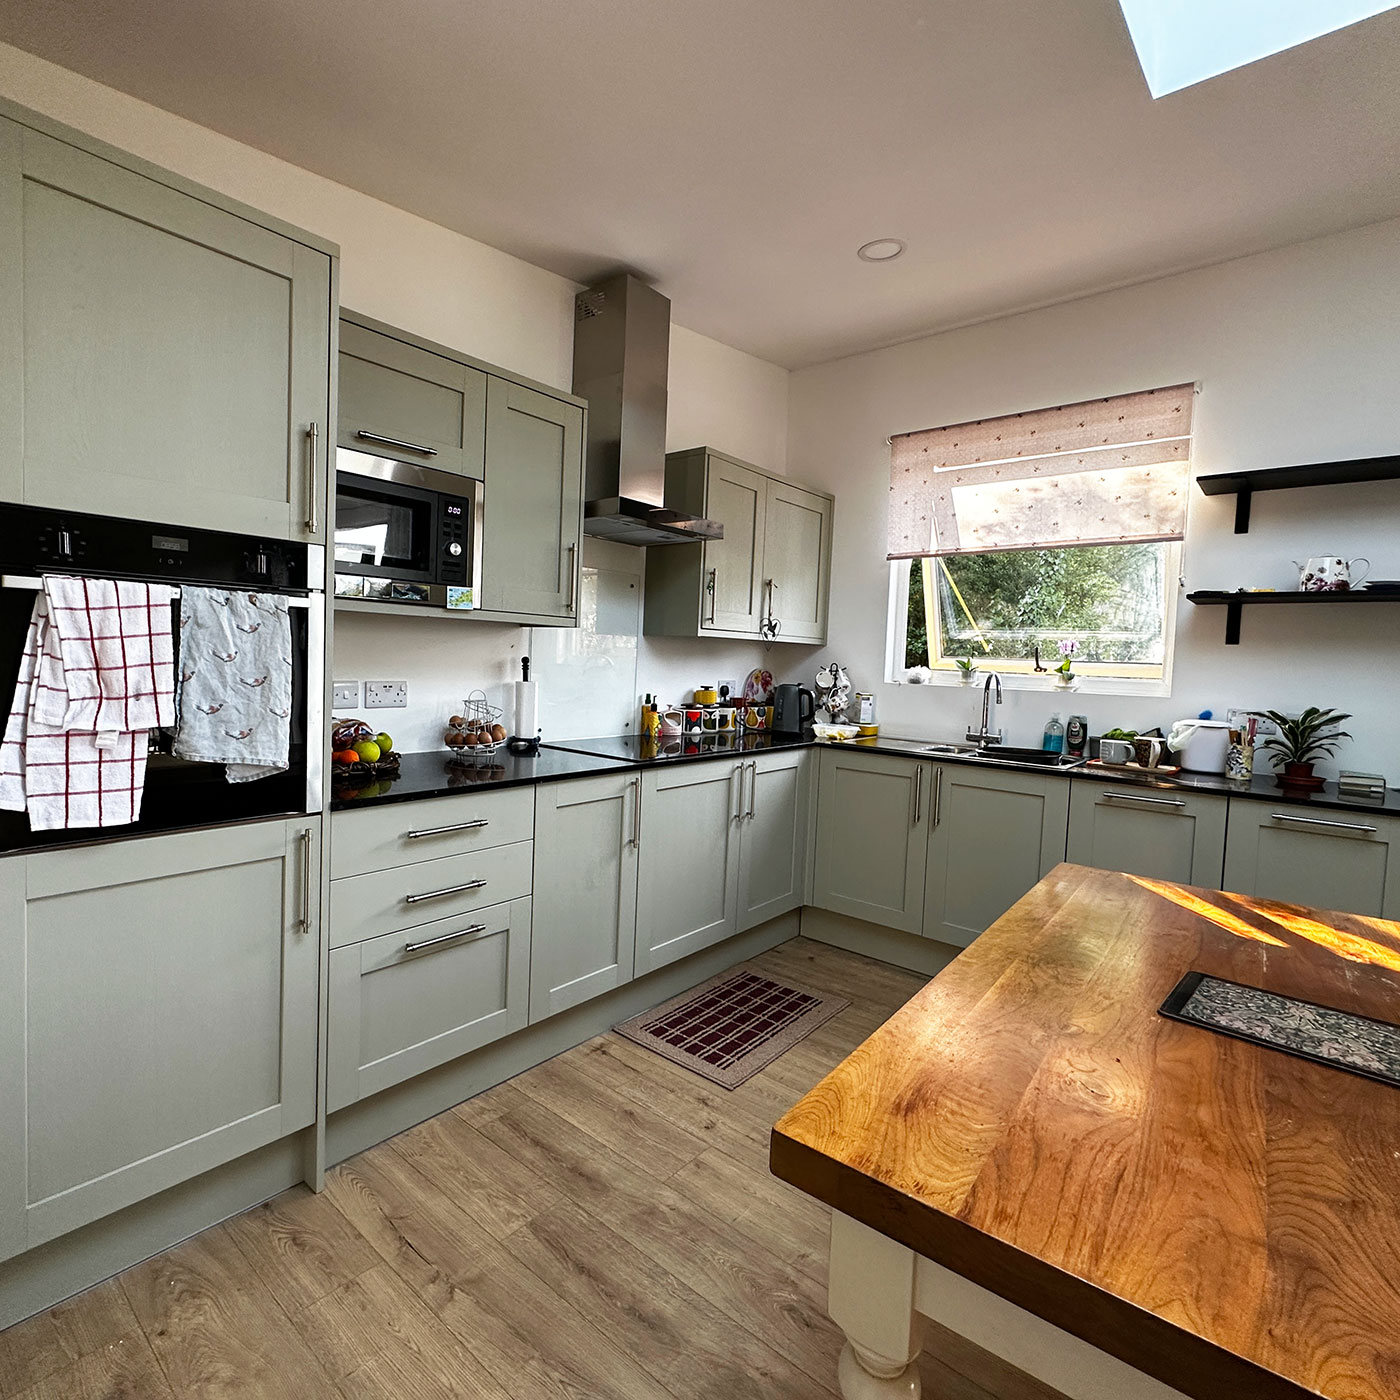 Designer kitchen with sage green cabinets